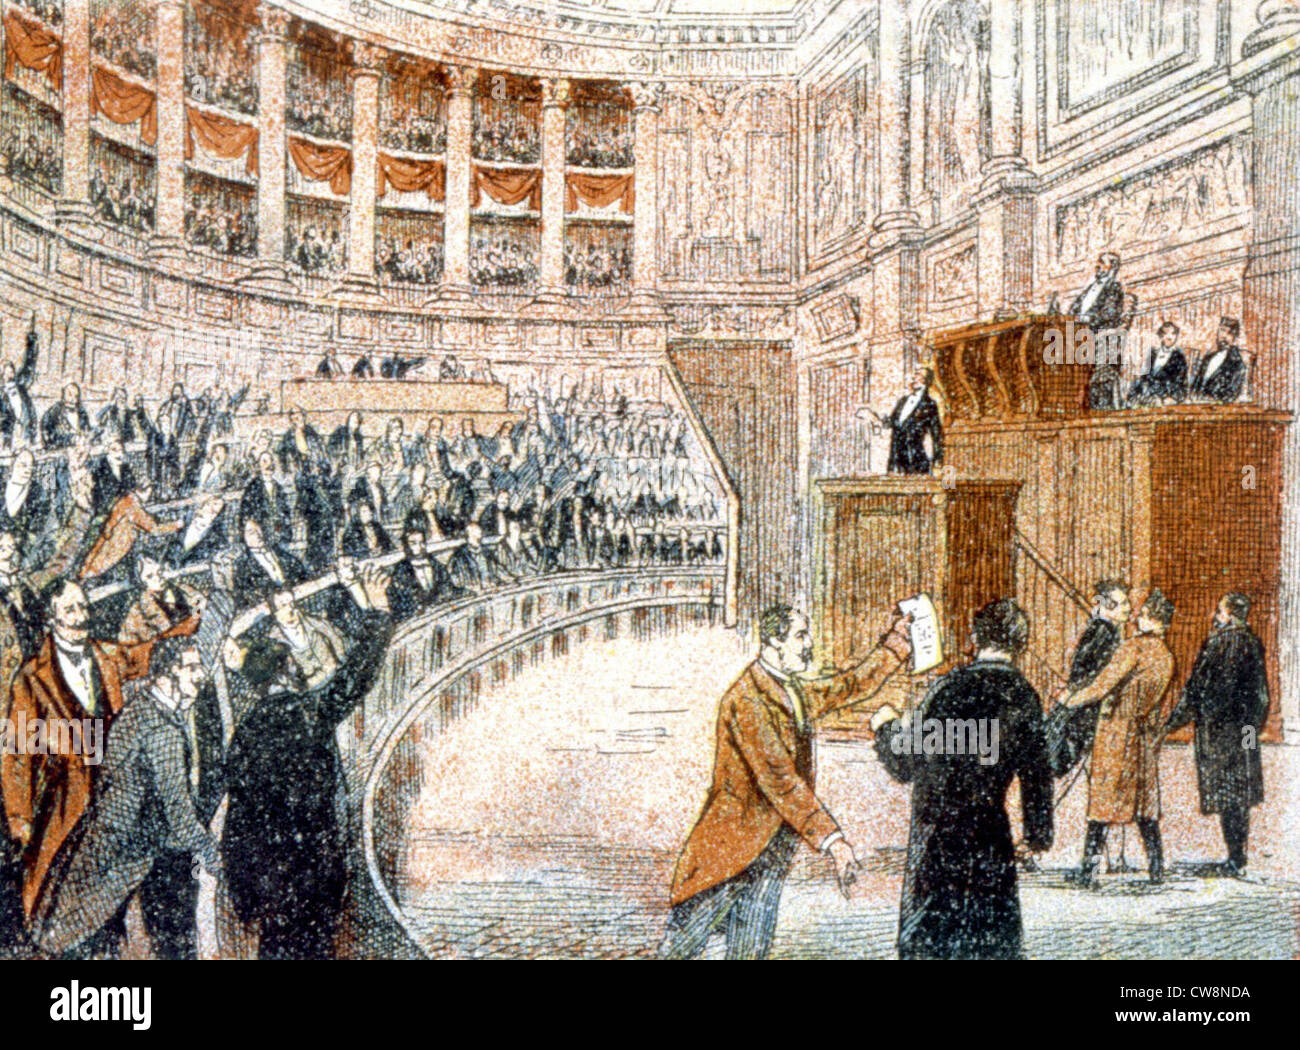 France, illustrations de la déclaration de la guerre de 1870 Banque D'Images